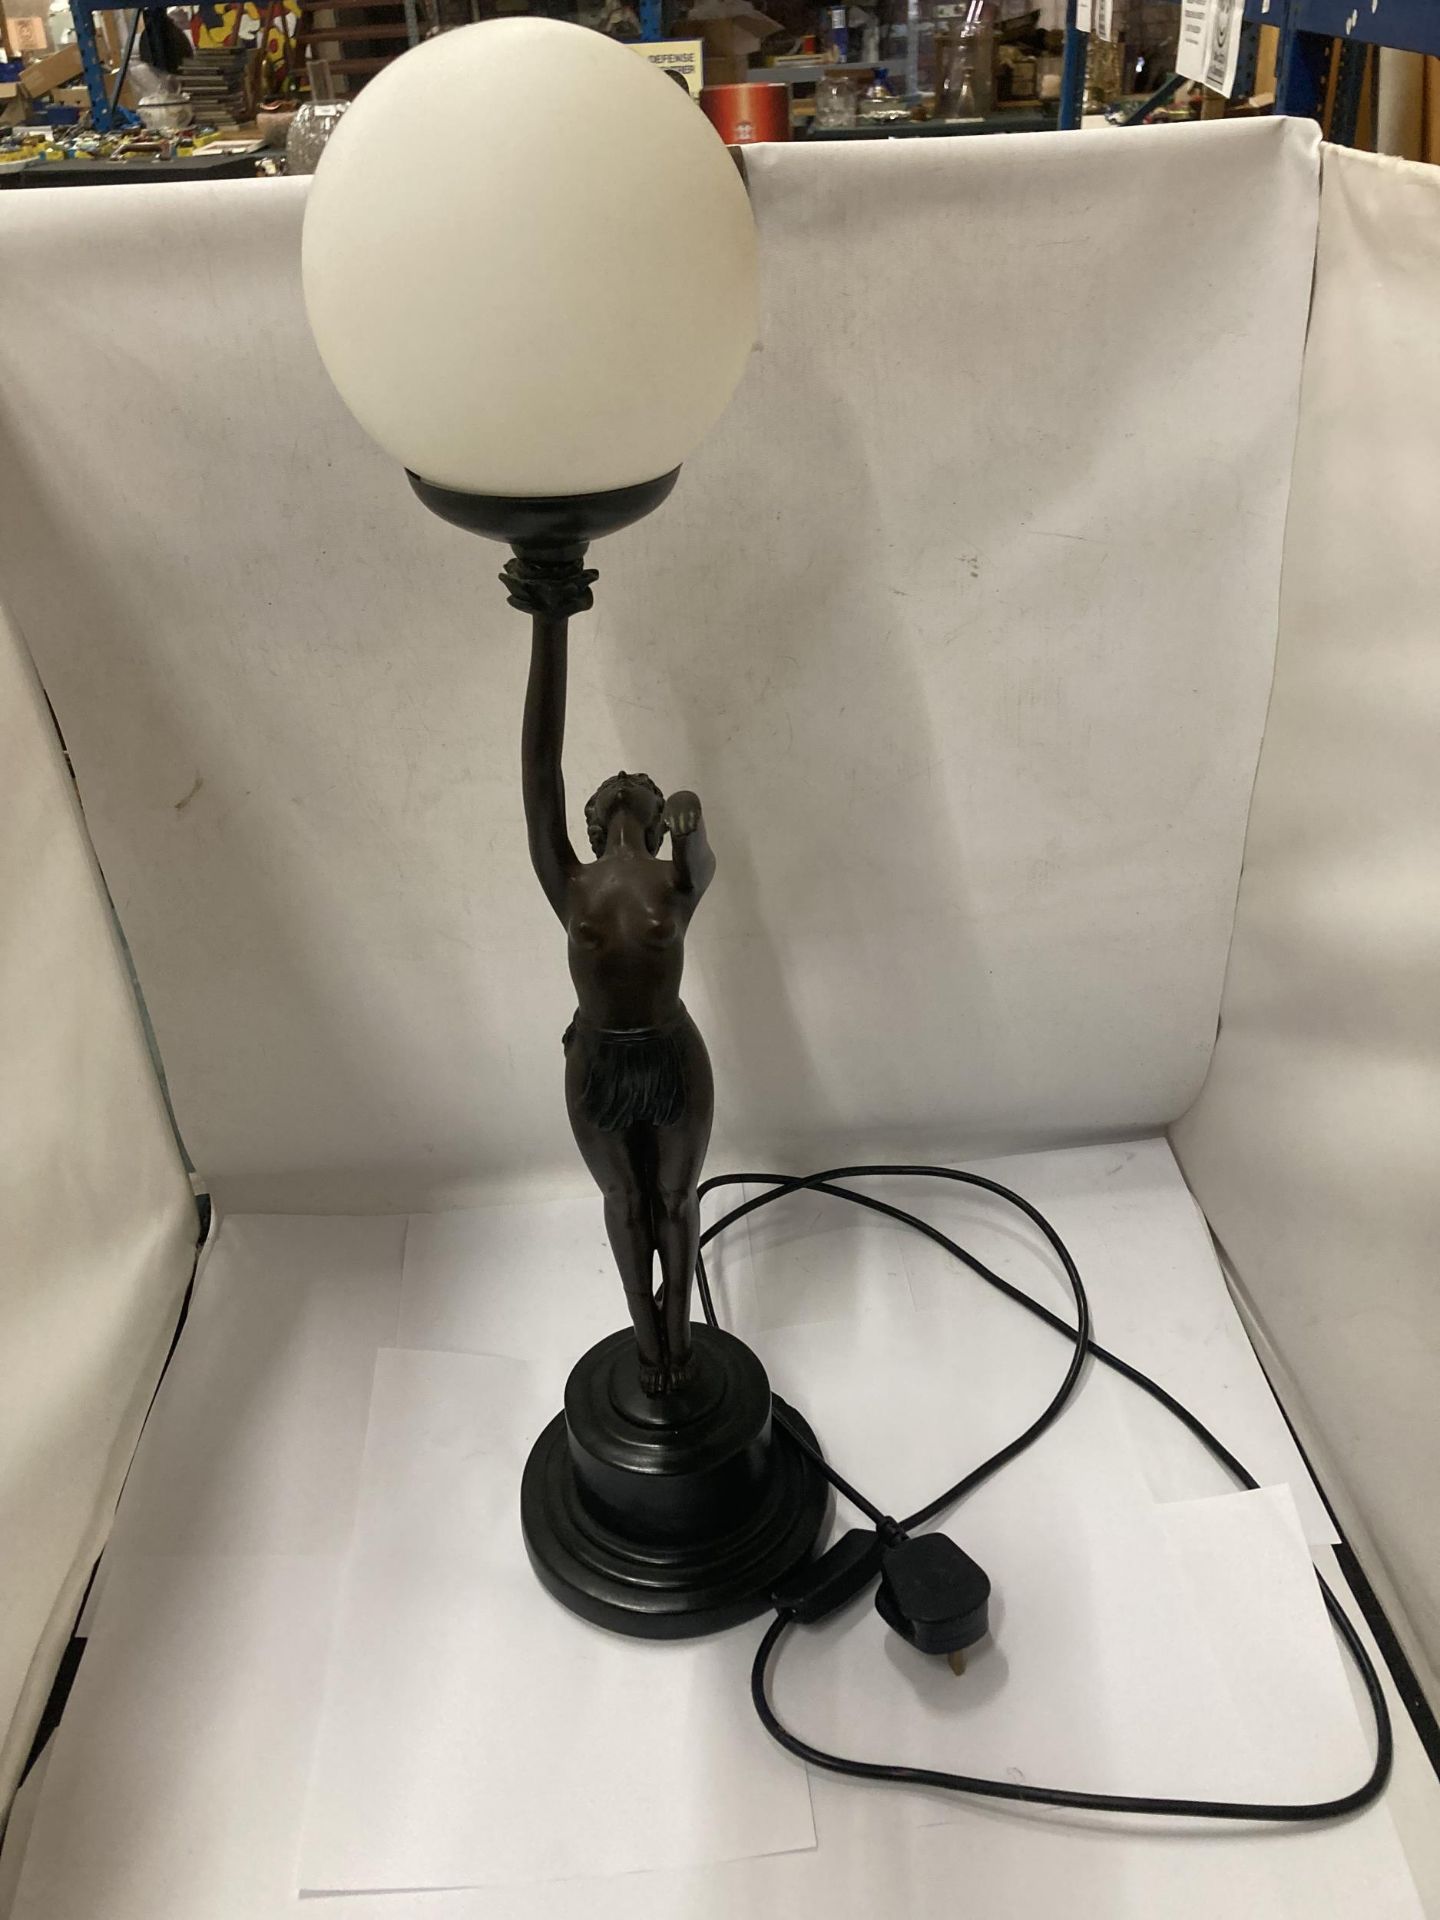 AN ART DECO BRONZE ART LAMP WITH SHADE - "NORA STANDING" - LEG A/F